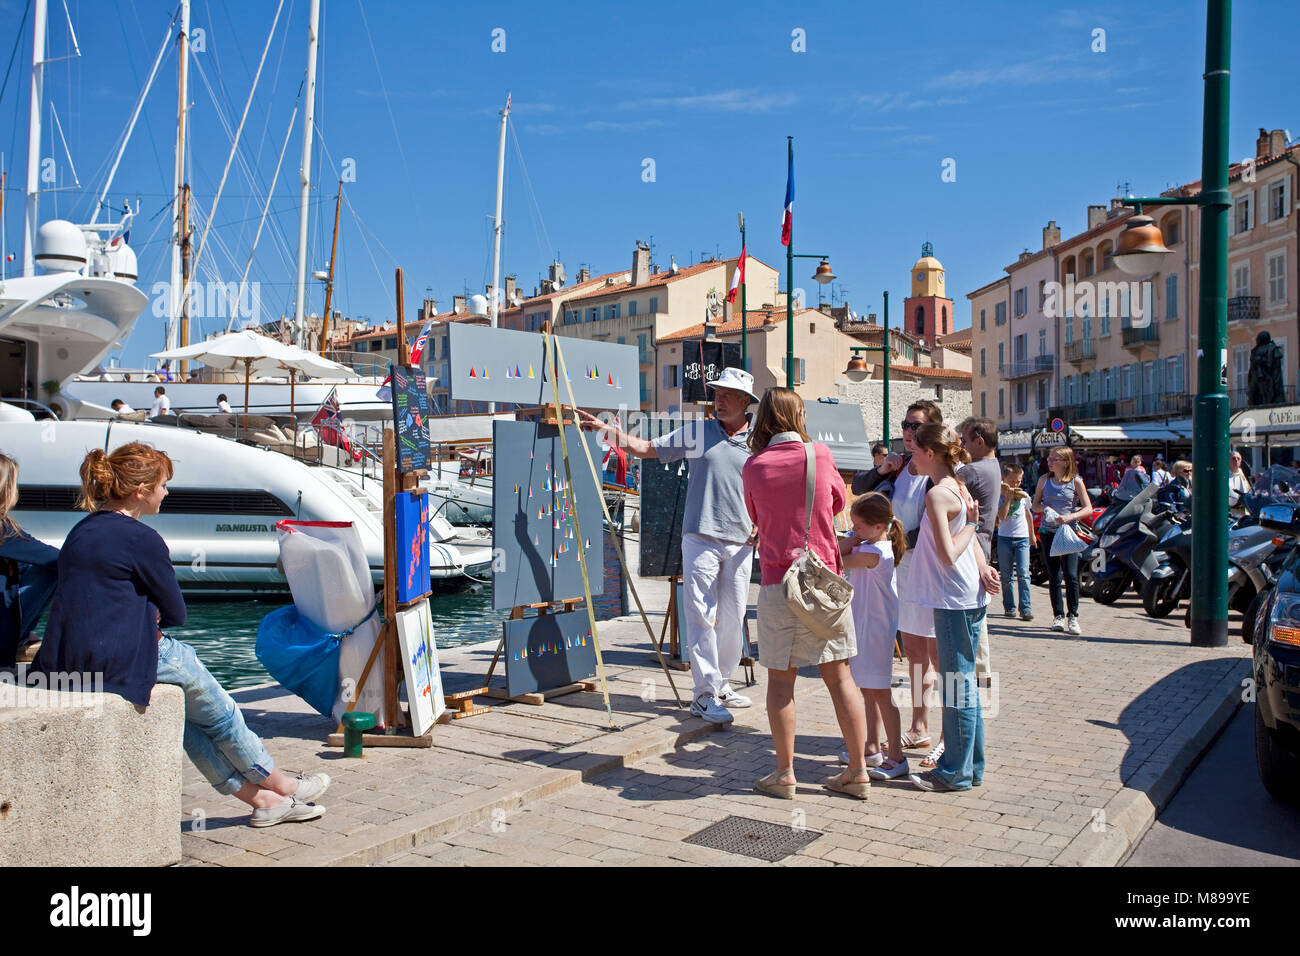 Maler zeigt seine Gemälde auf einem Spaziergang Promenade am Hafen von Saint Tropez, Côte d'Azur, Südfrankreich, Cote d'Azur, Frankreich, Europa Stockfoto